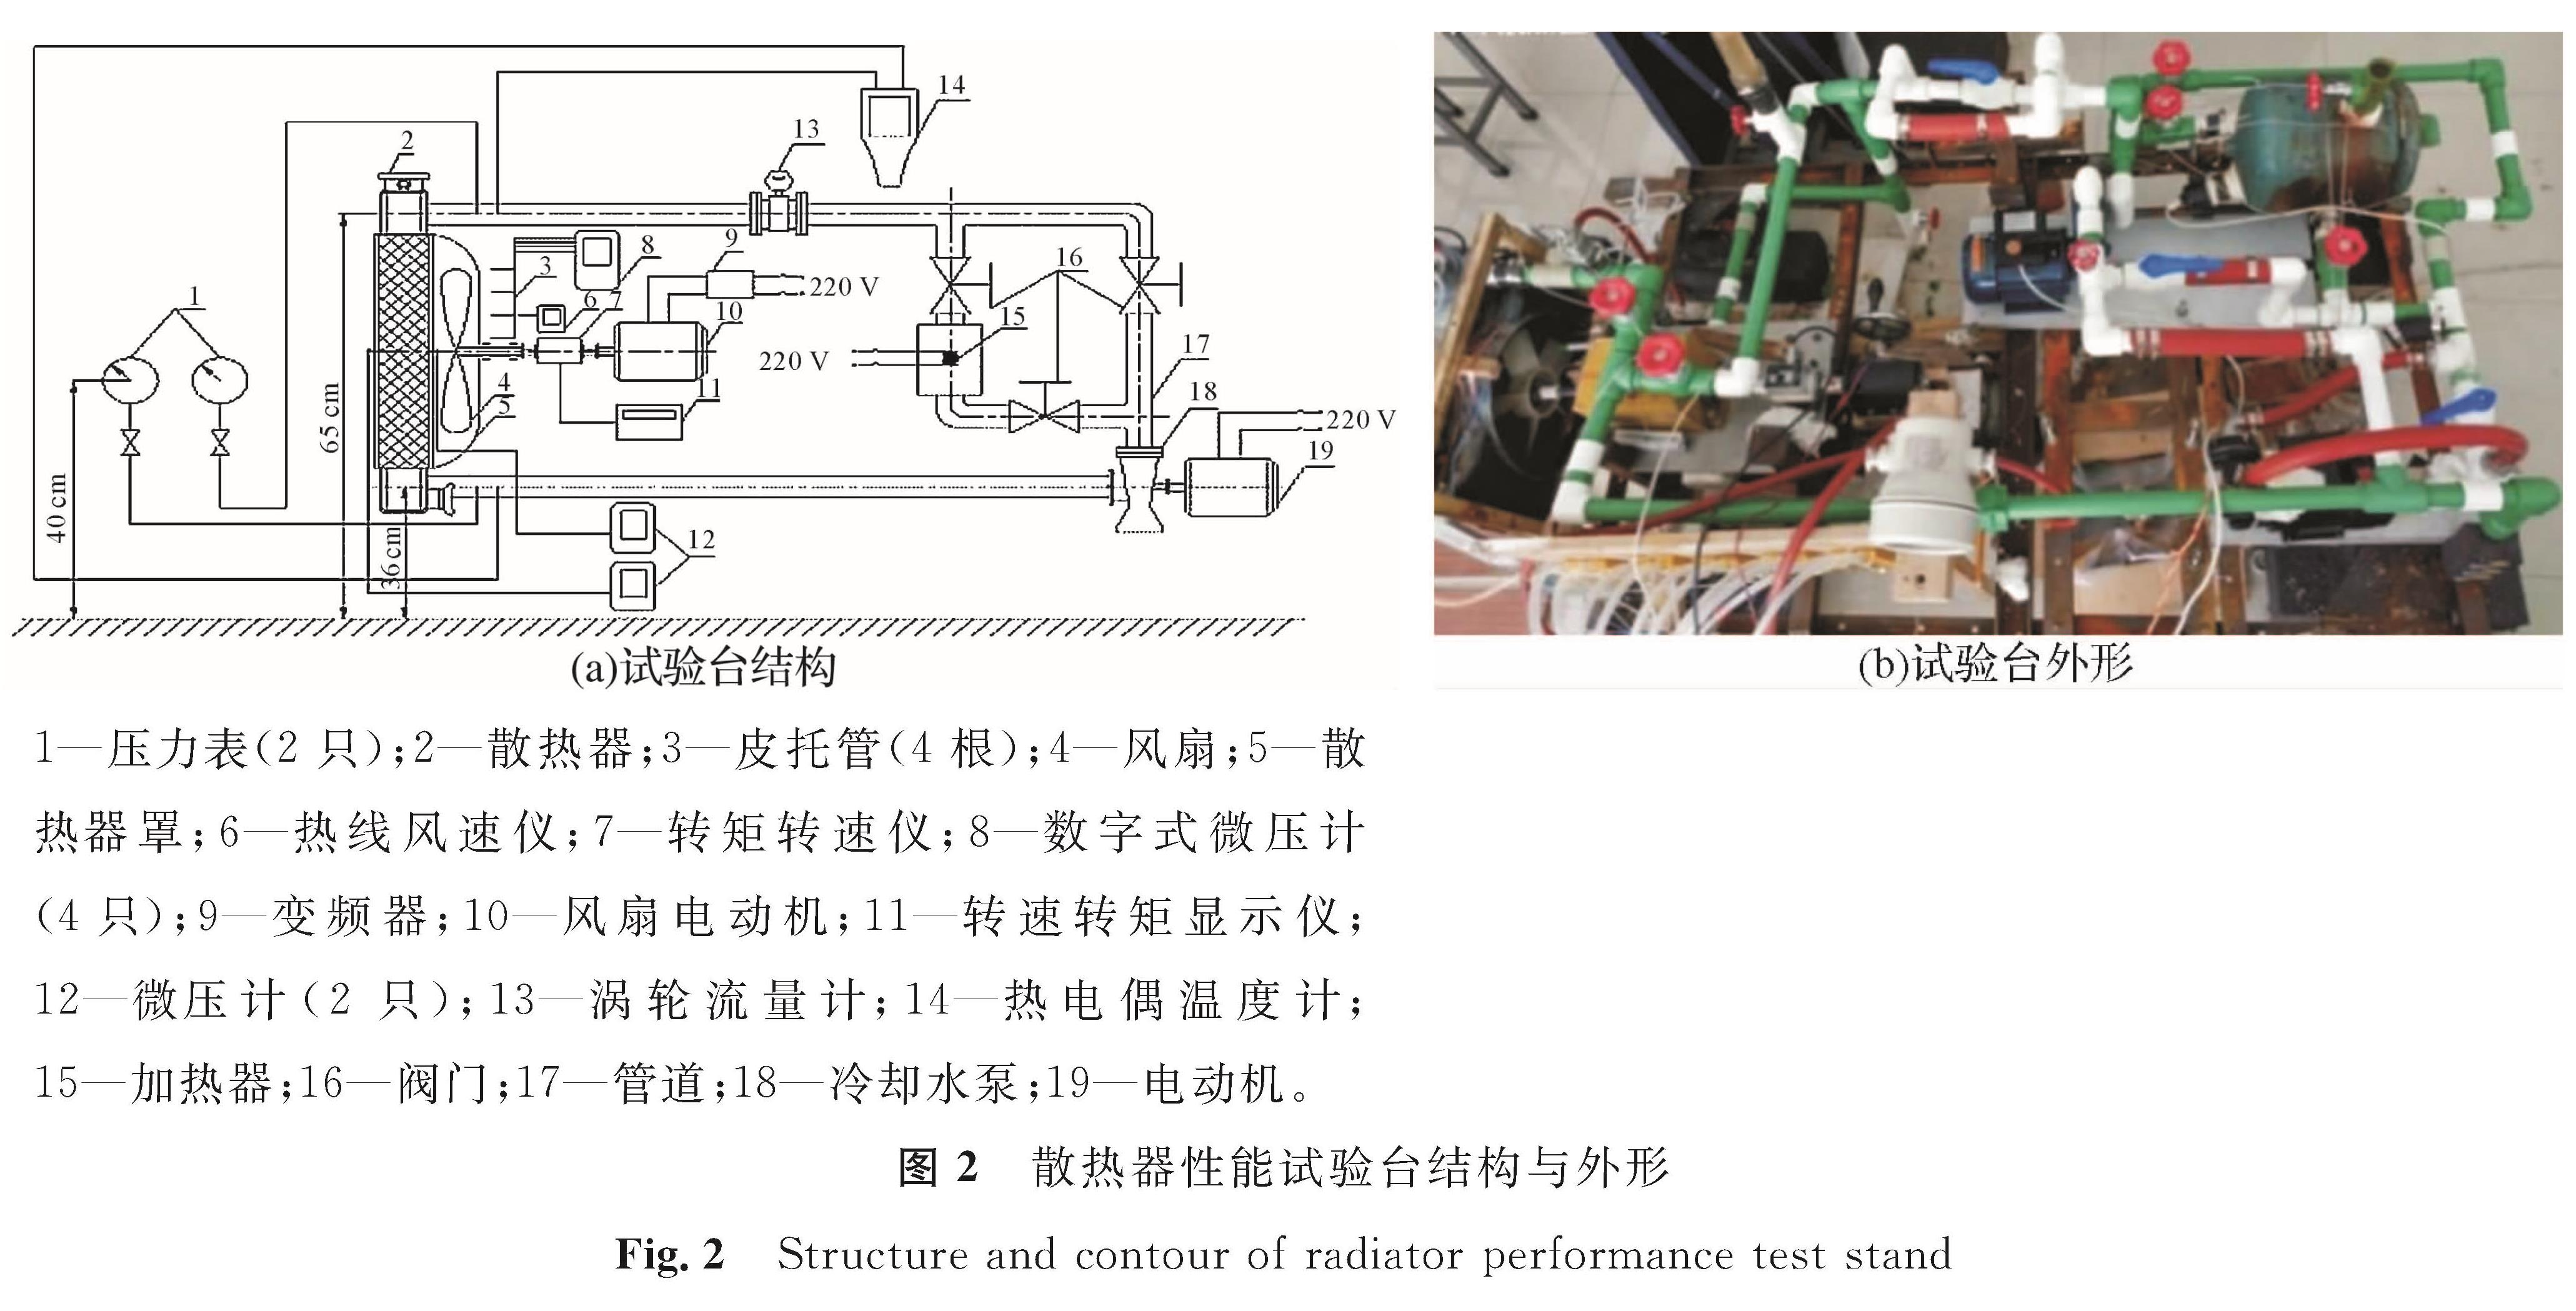 图2 散热器性能试验台结构与外形<br/>Fig.2 Structure and contour of radiator performance test stand